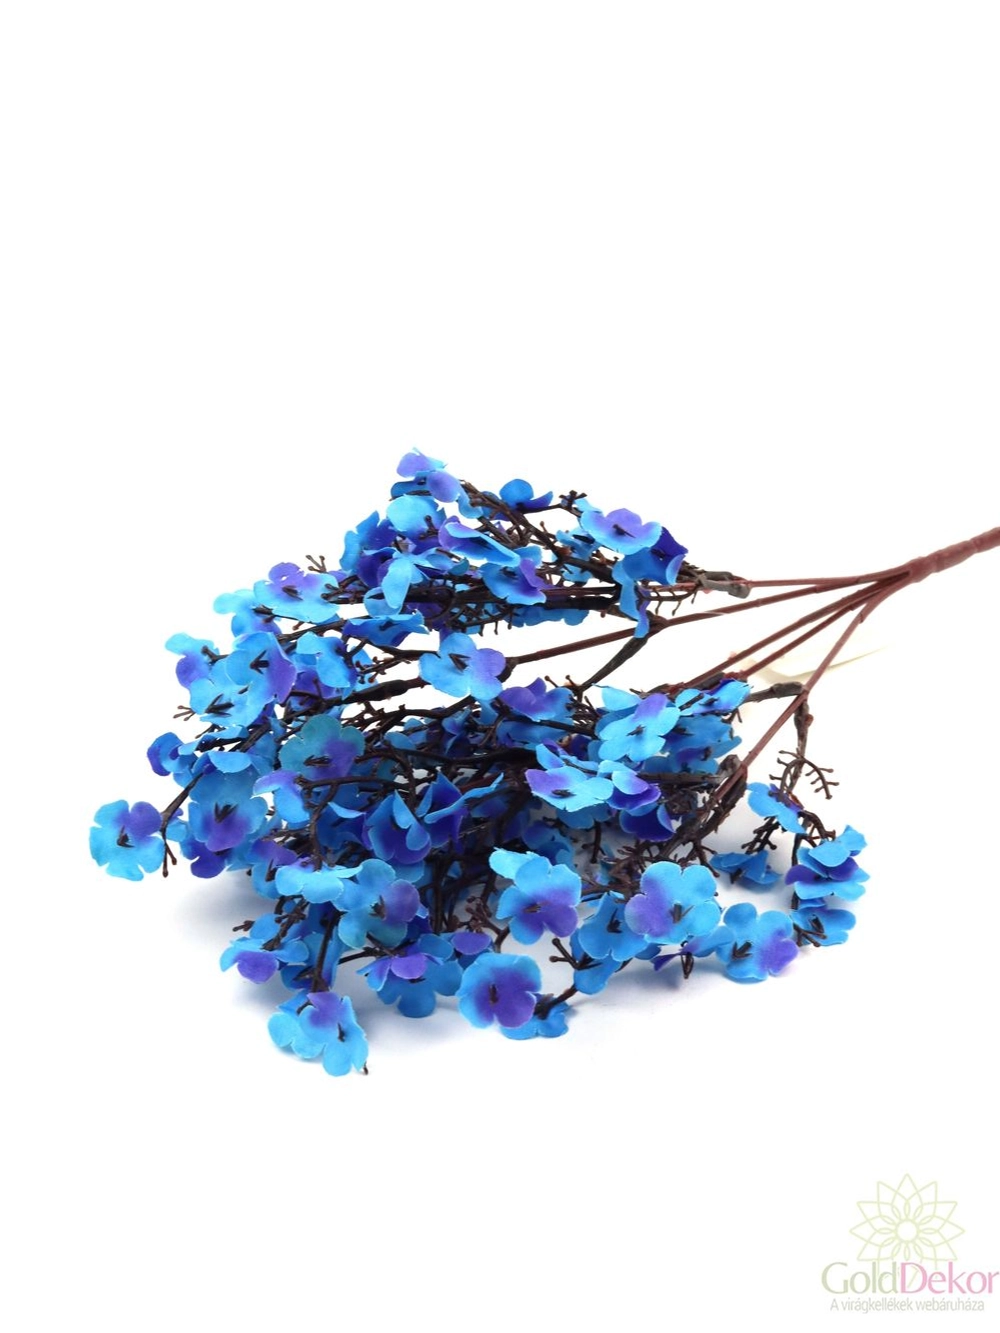 Őszi virágos csokor kicsi  - Kék